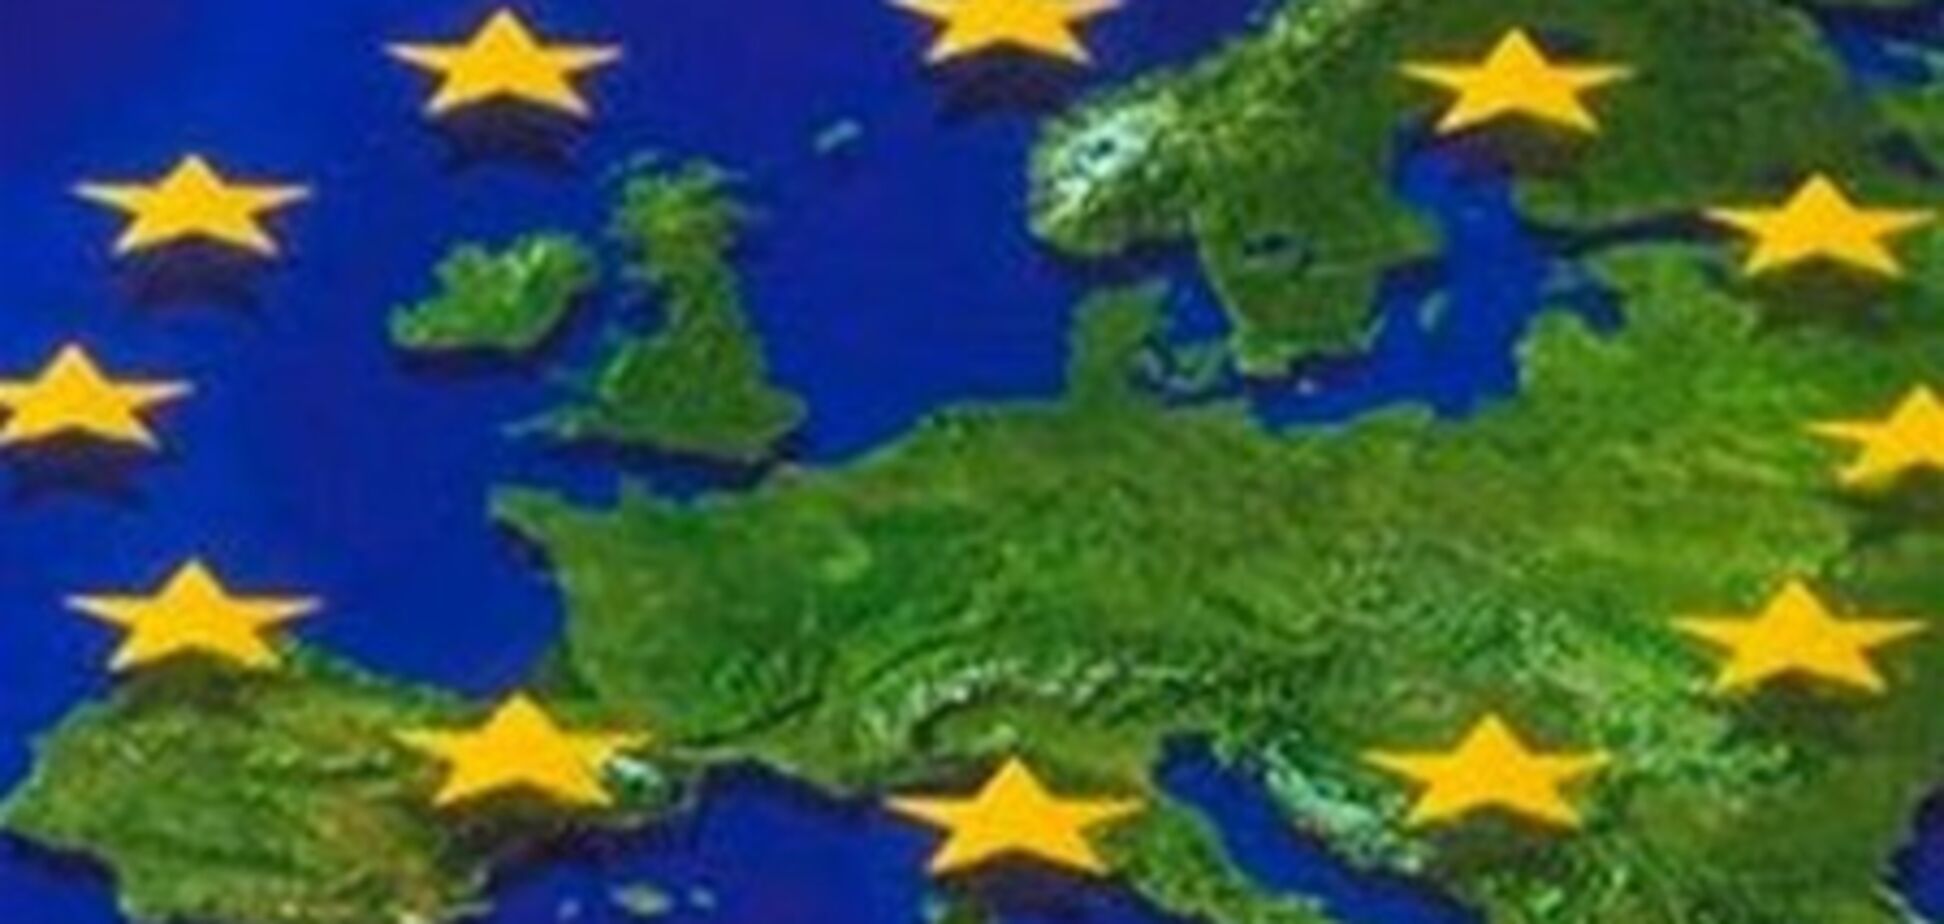 Еврокомиссия может внести поправки в Шенгенское соглашение